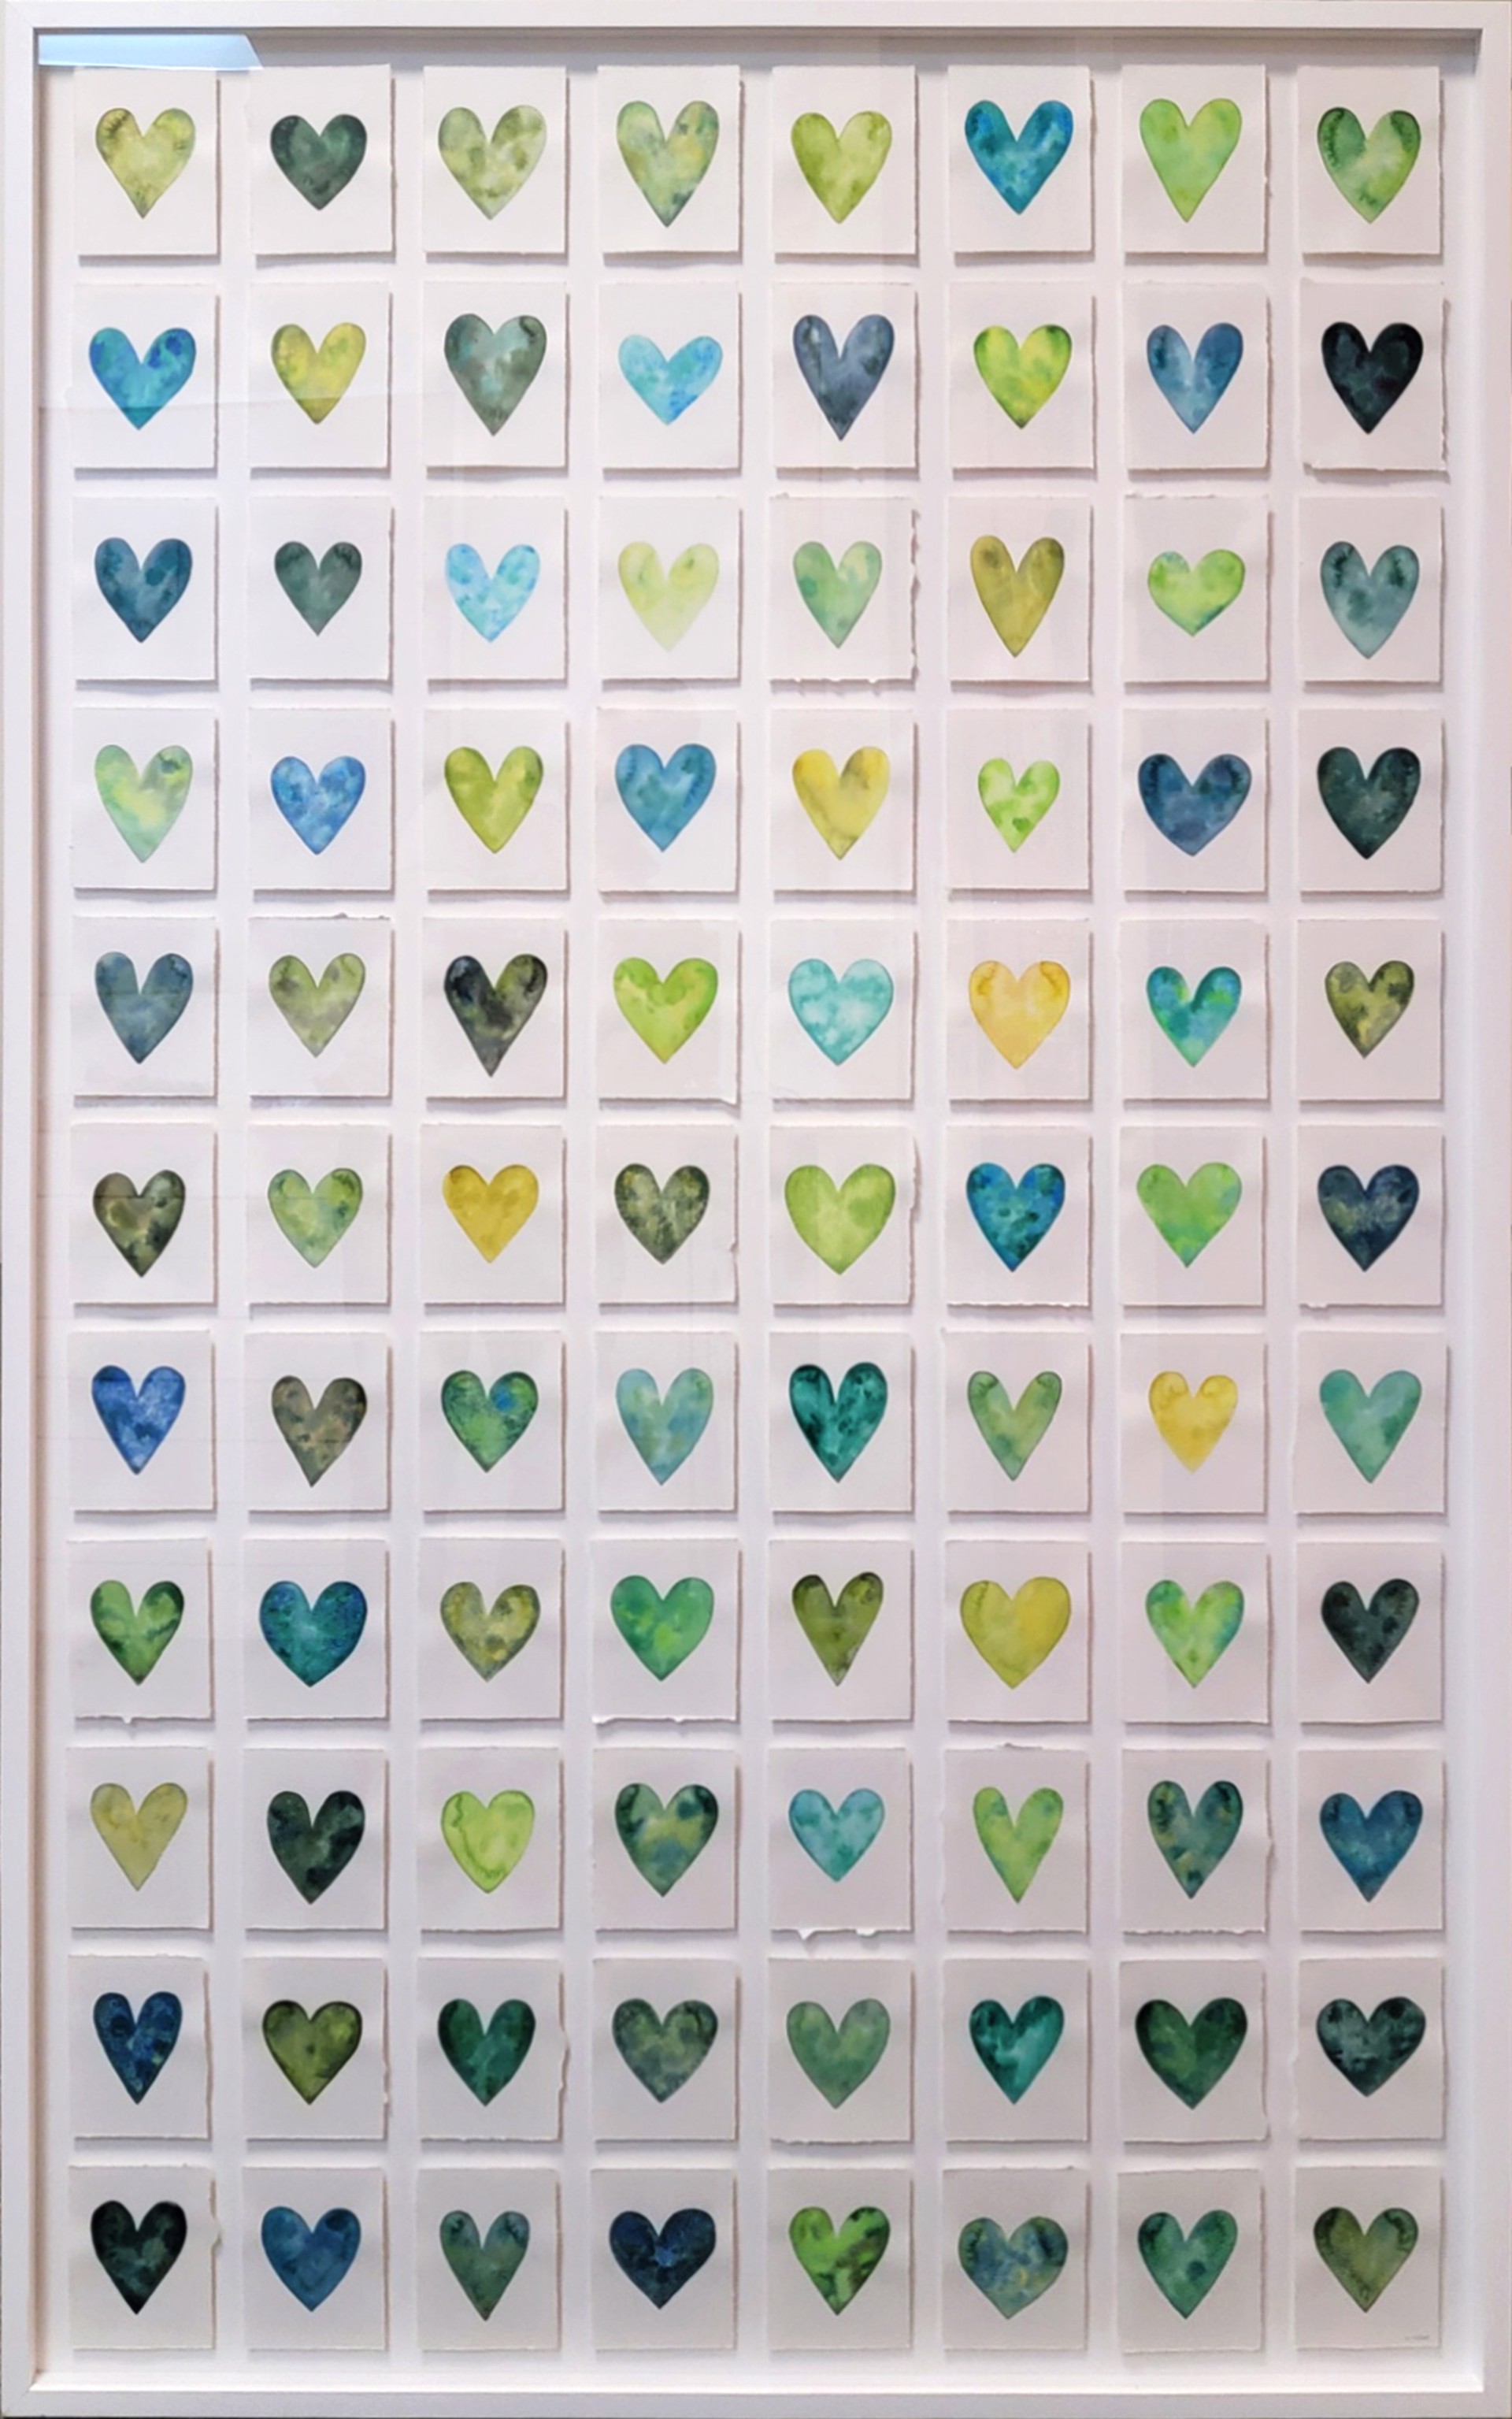 Green Hearts by Berkeley Hoerr